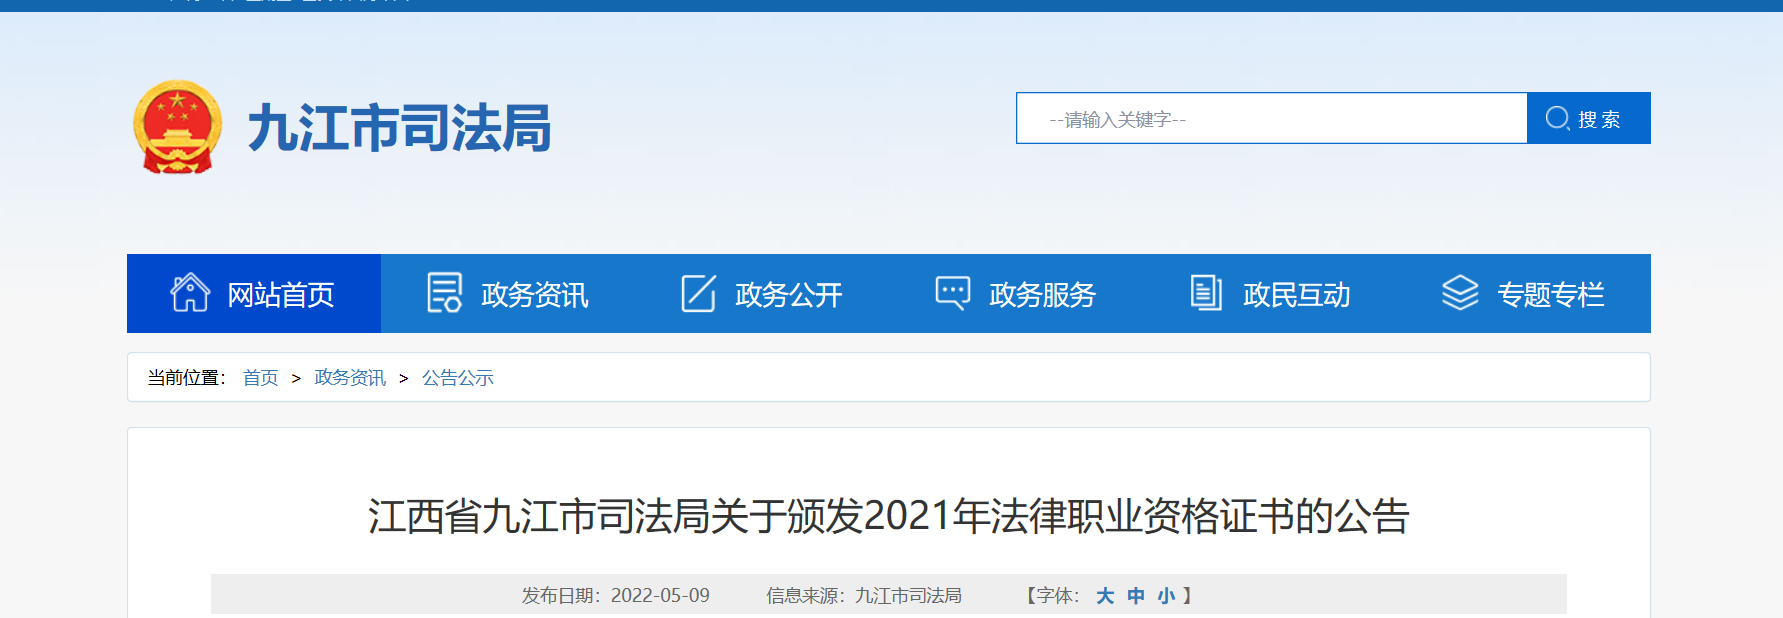 江西九江关于颁发2021年法律职业资格证书的公告